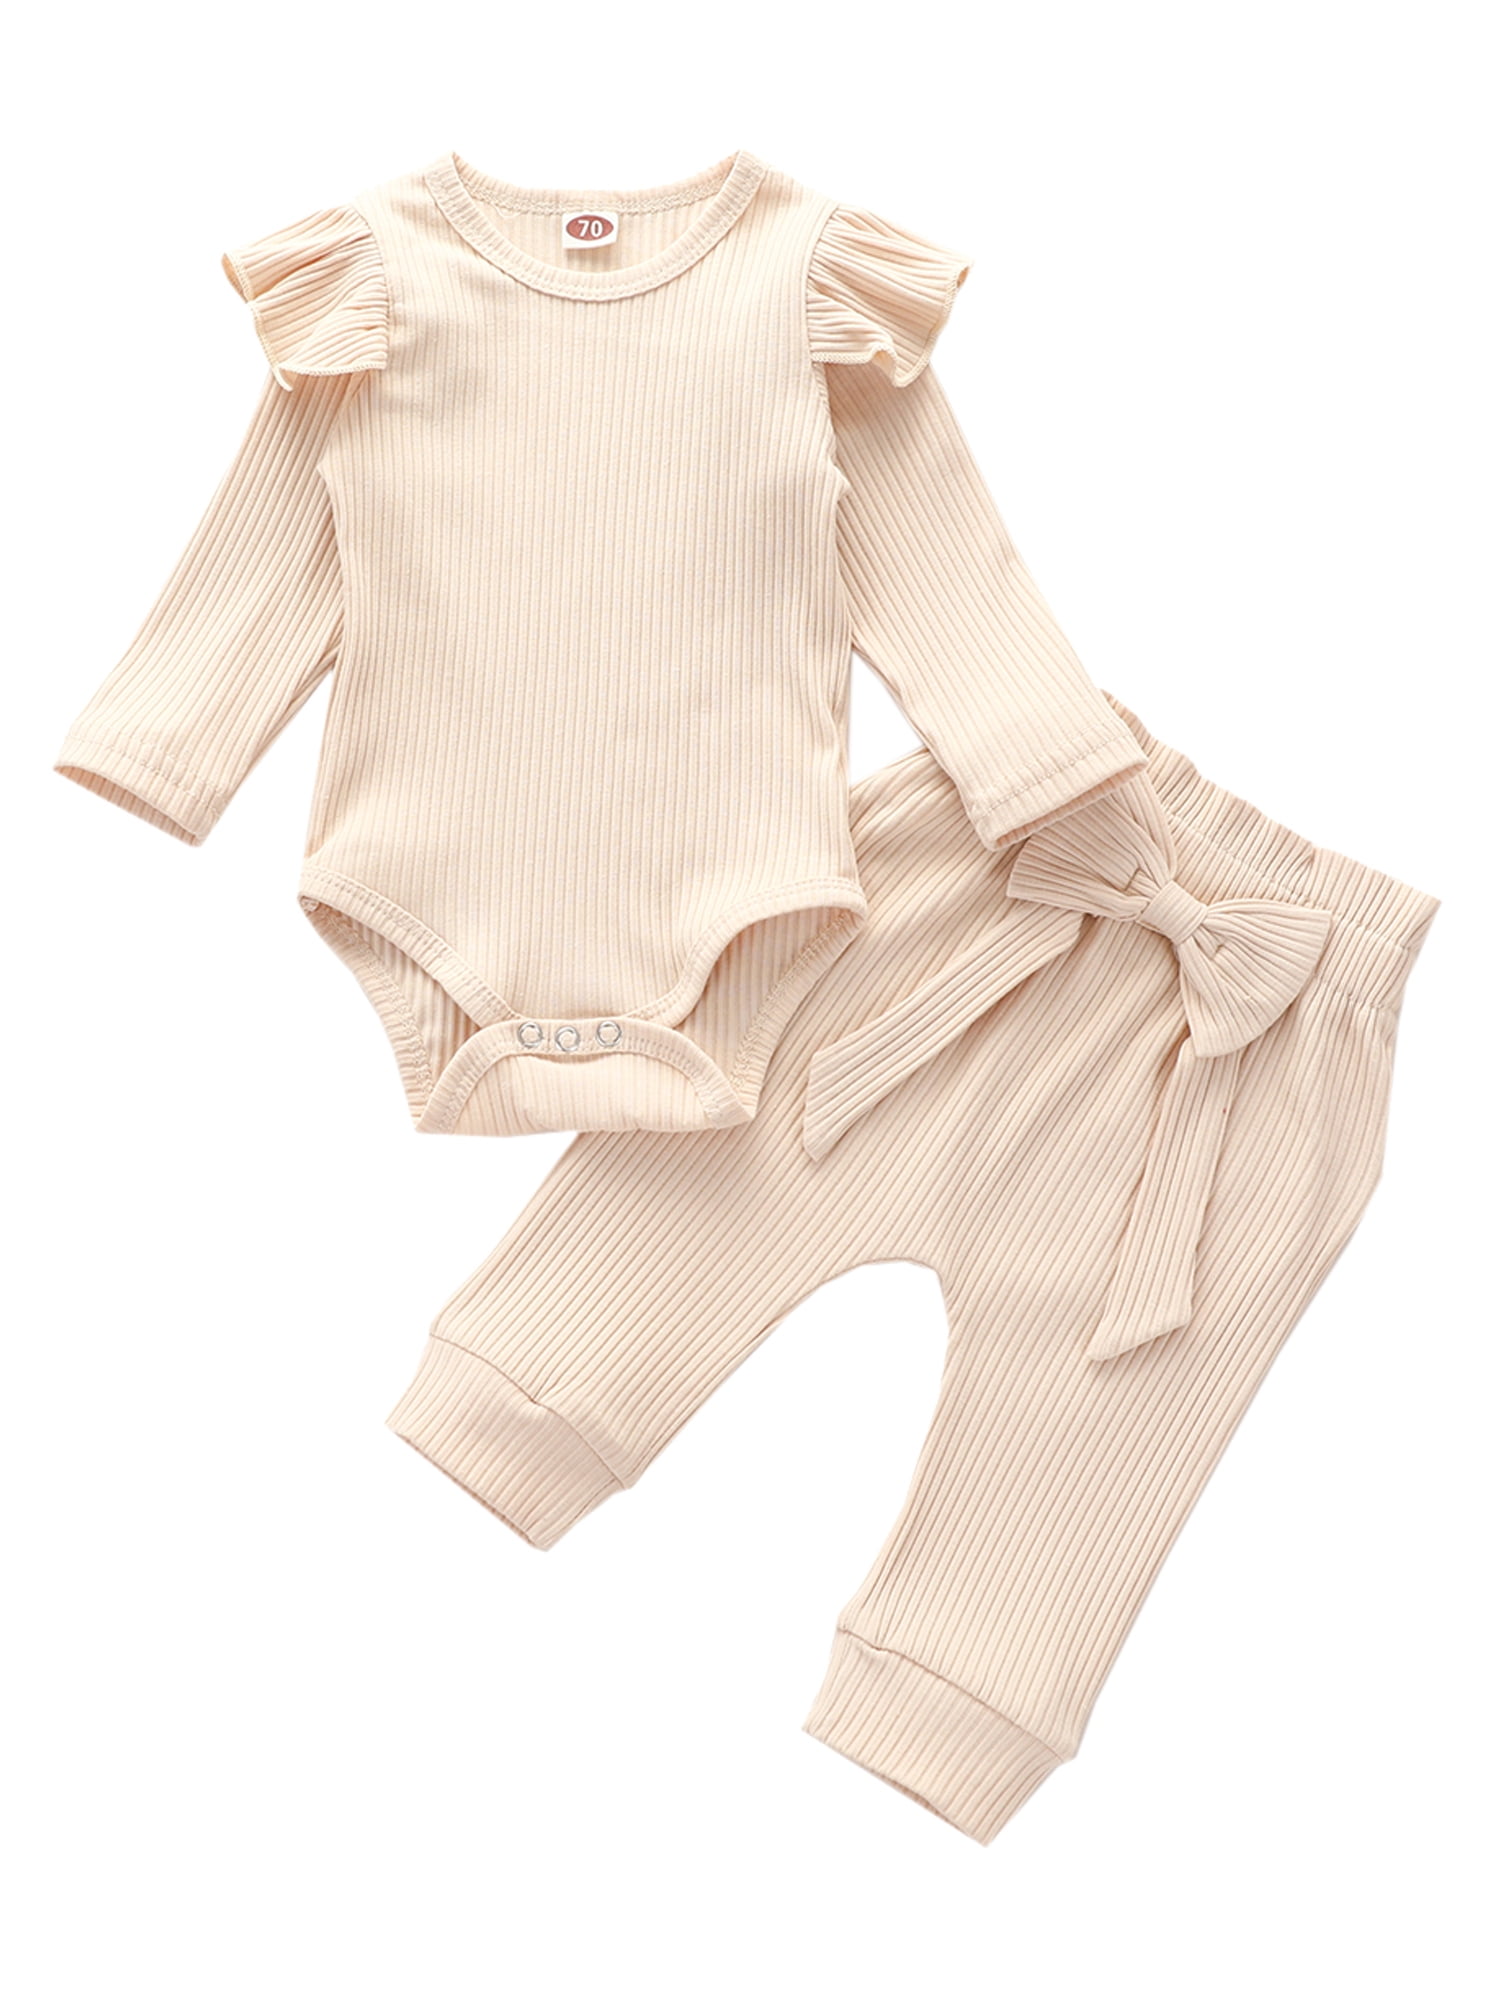 Reiziger hoop Weg Sunisery Newborn Infant Baby Girl Fall Clothes Knitted Ruffle Long Sleeve  Romper Bodysuit Bow Pants 2Pcs Outfits Beige 12-18 Months - Walmart.com